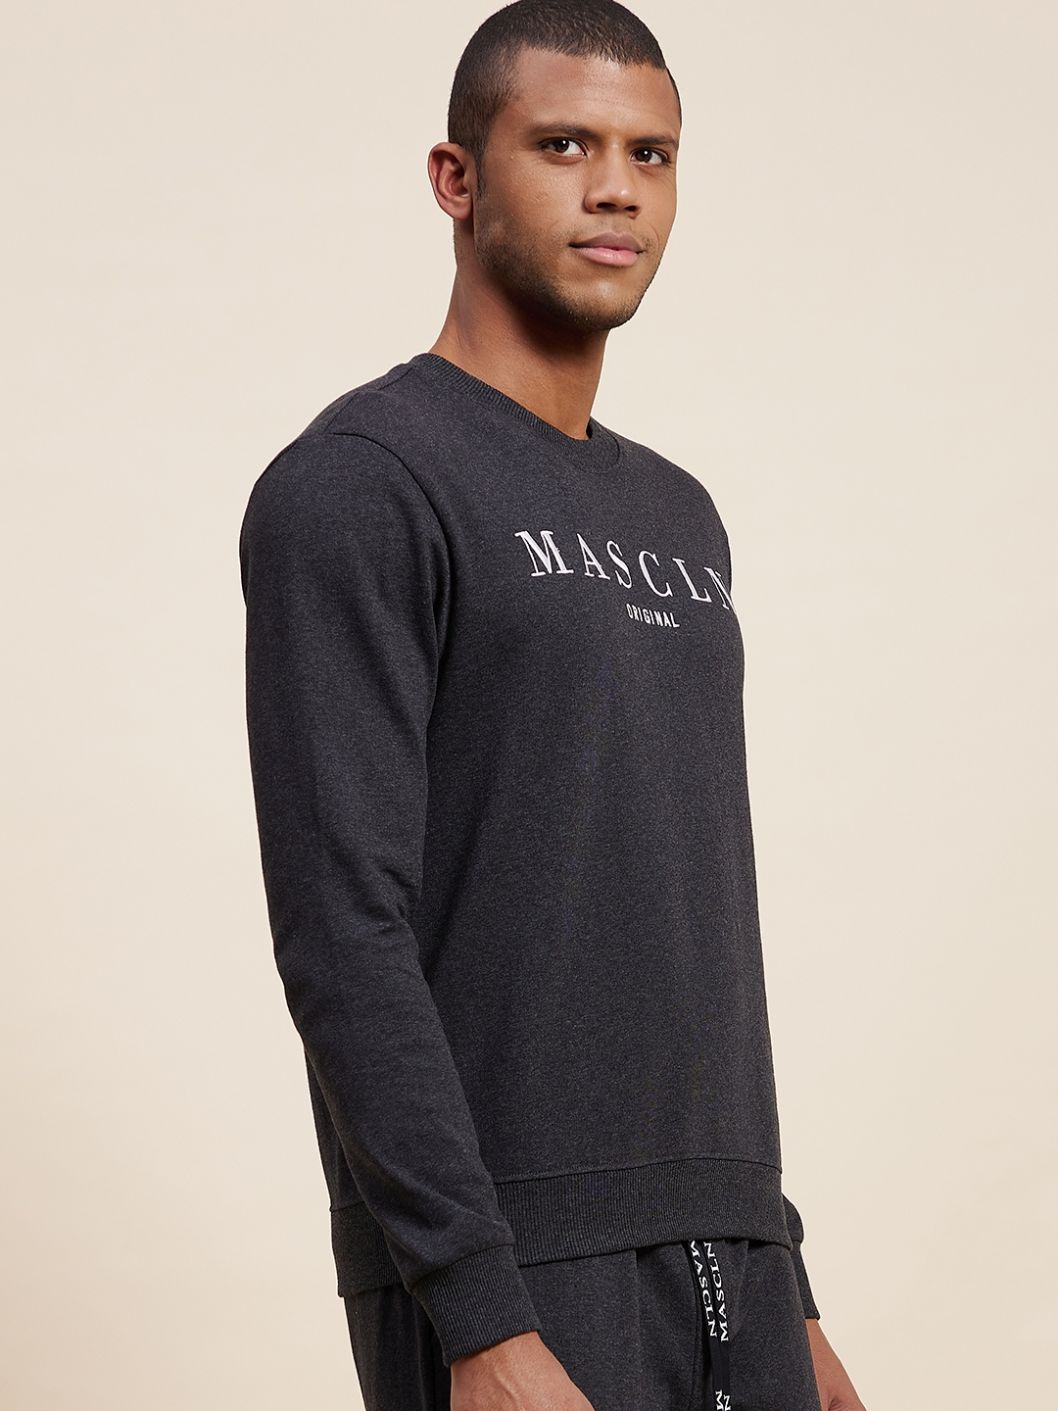 Men's Dark Grey MASCLN Embroidered Sweatshirt